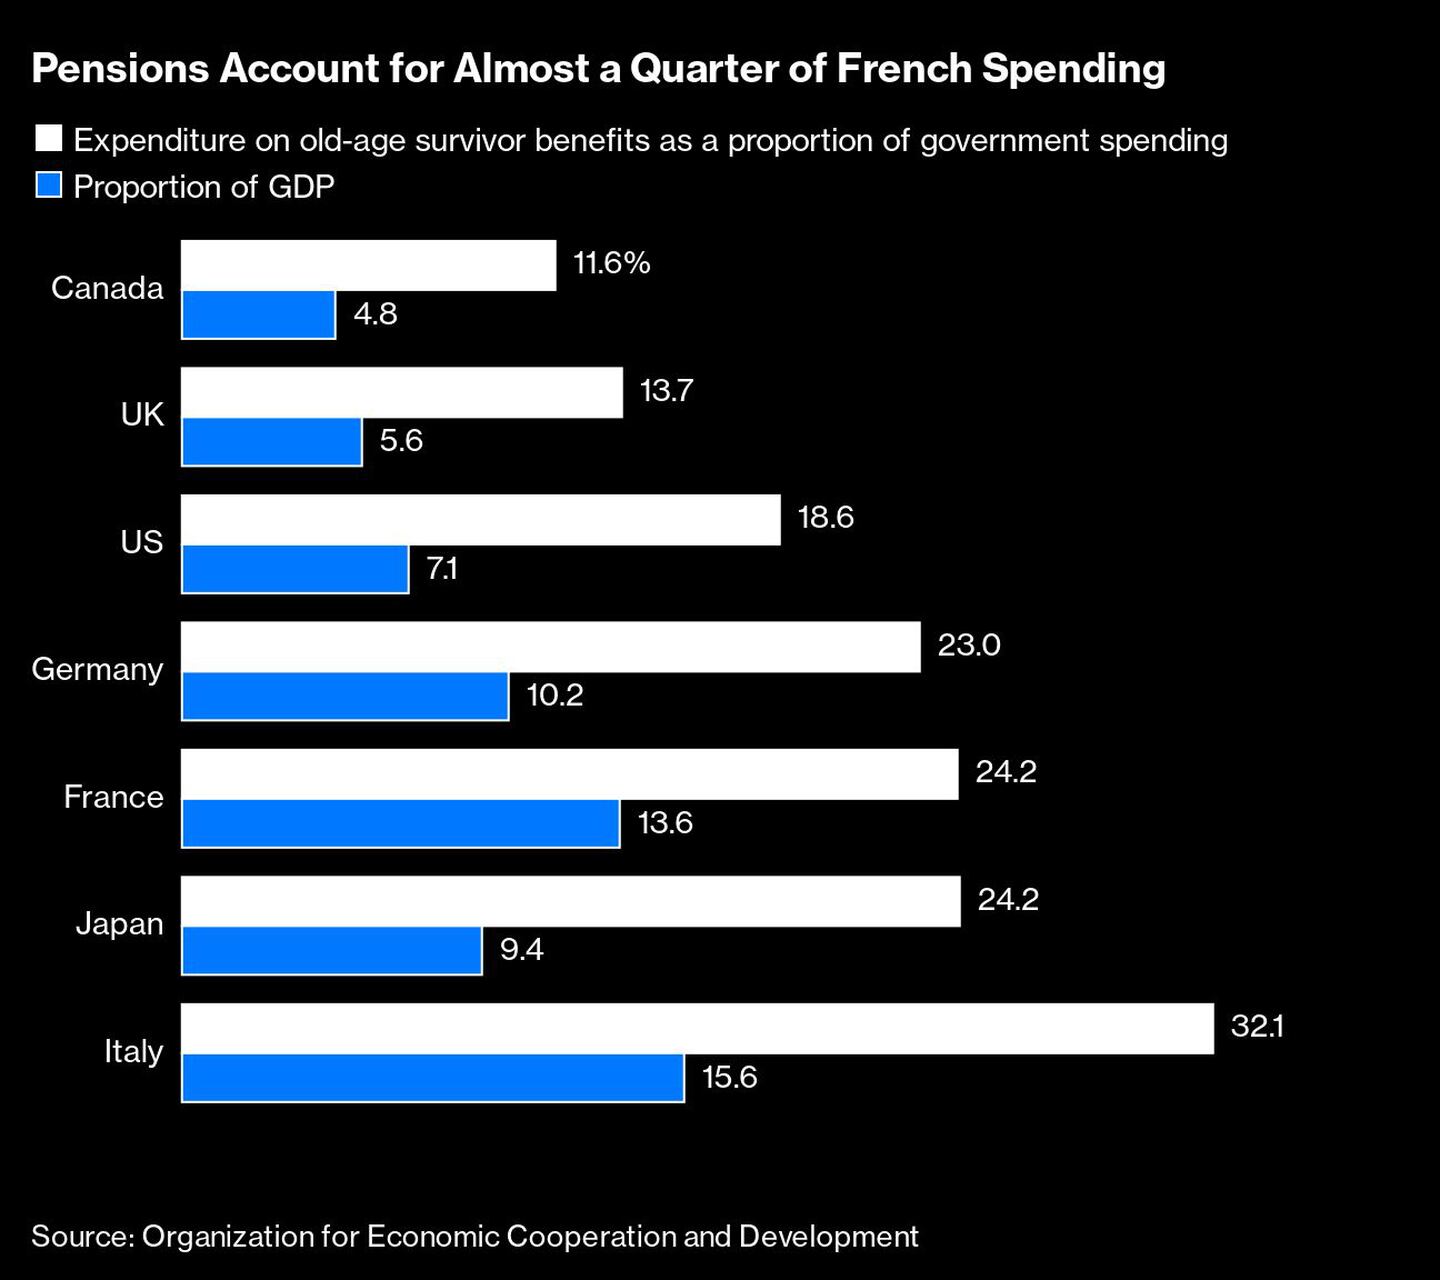 Las pensiones representan casi una cuarta parte del gasto francésdfd